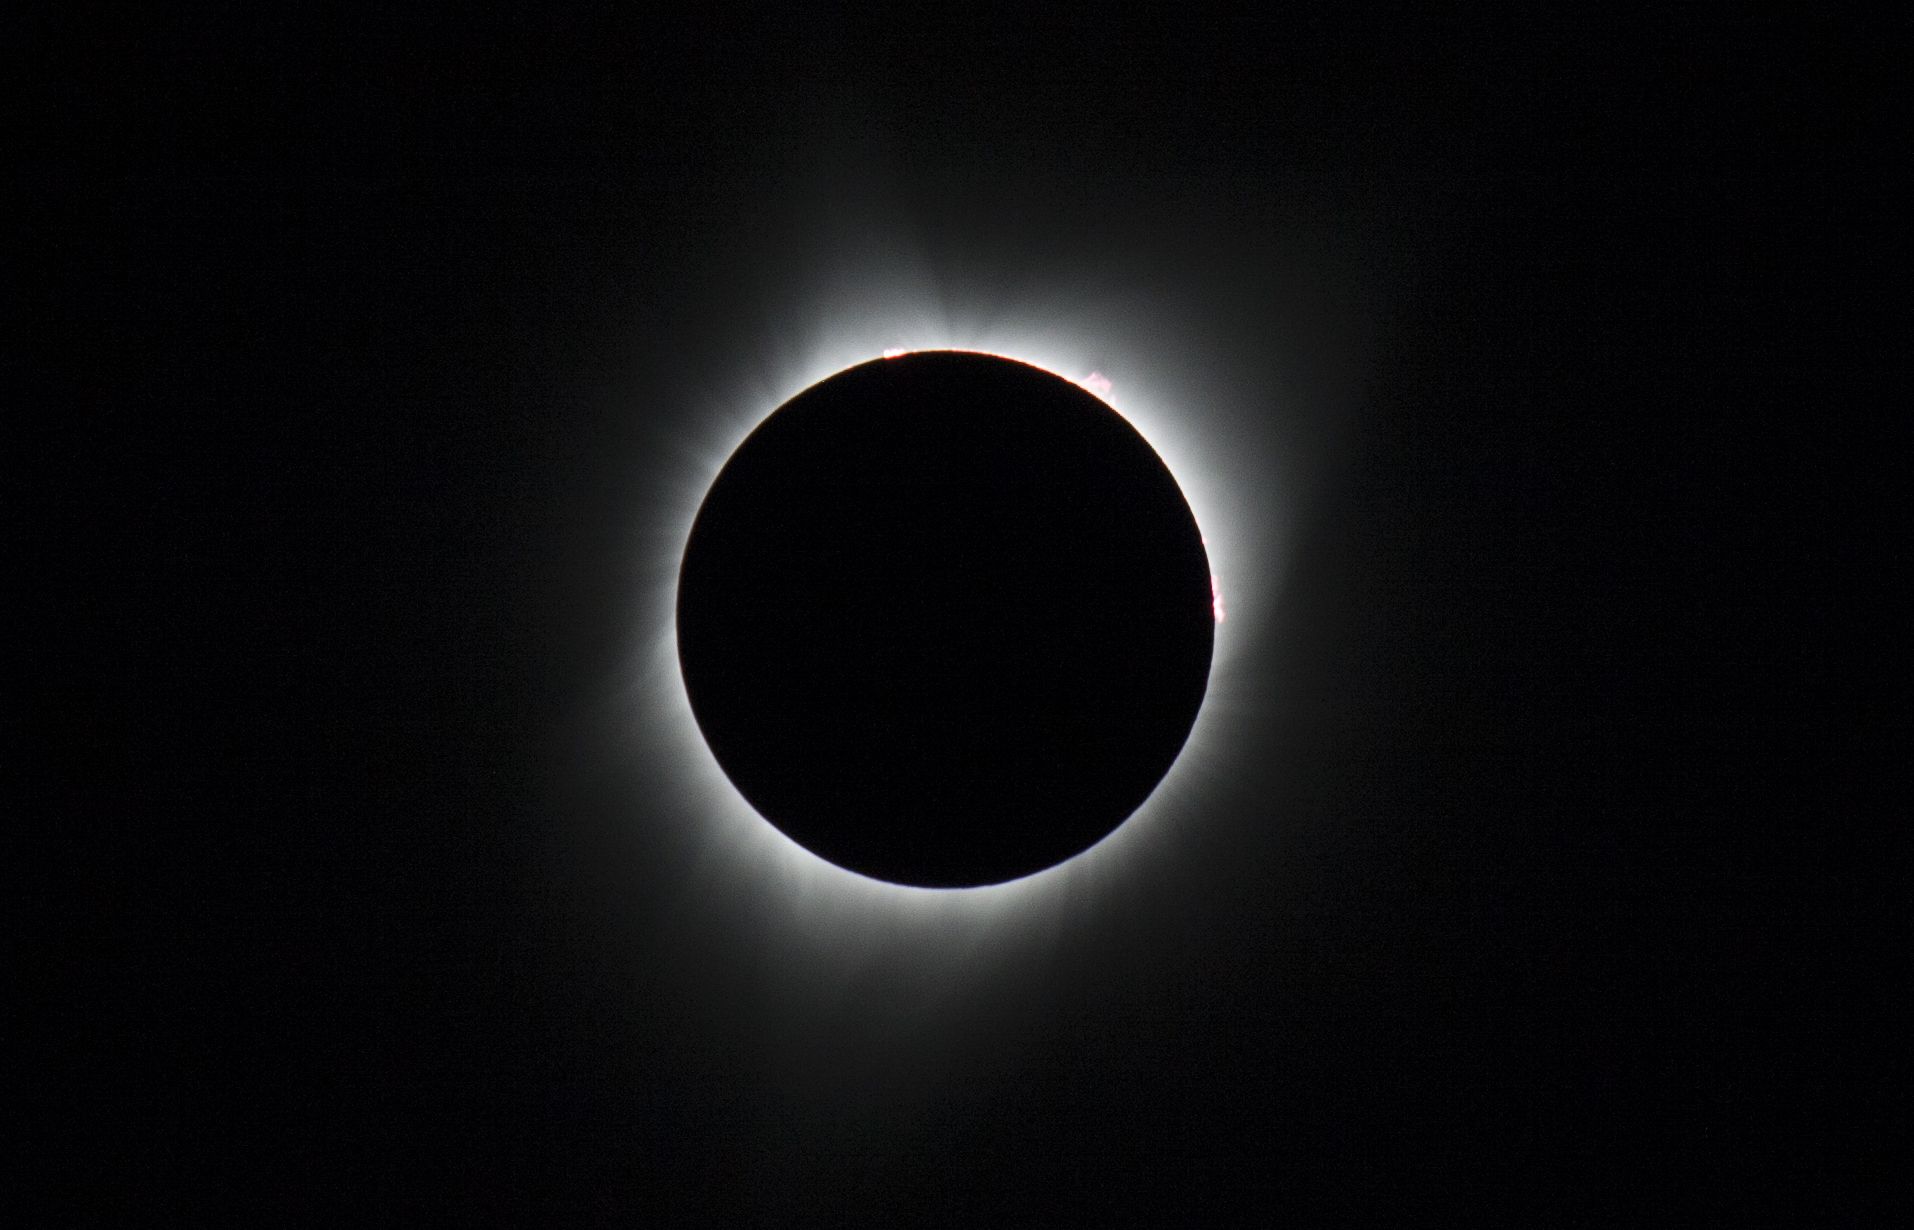 Кадър от пълната фаза на пълното слънчево затъмнение от 21 август 2017 г., заснета от българската експедиция за наблюдение от Орегон, САЩ